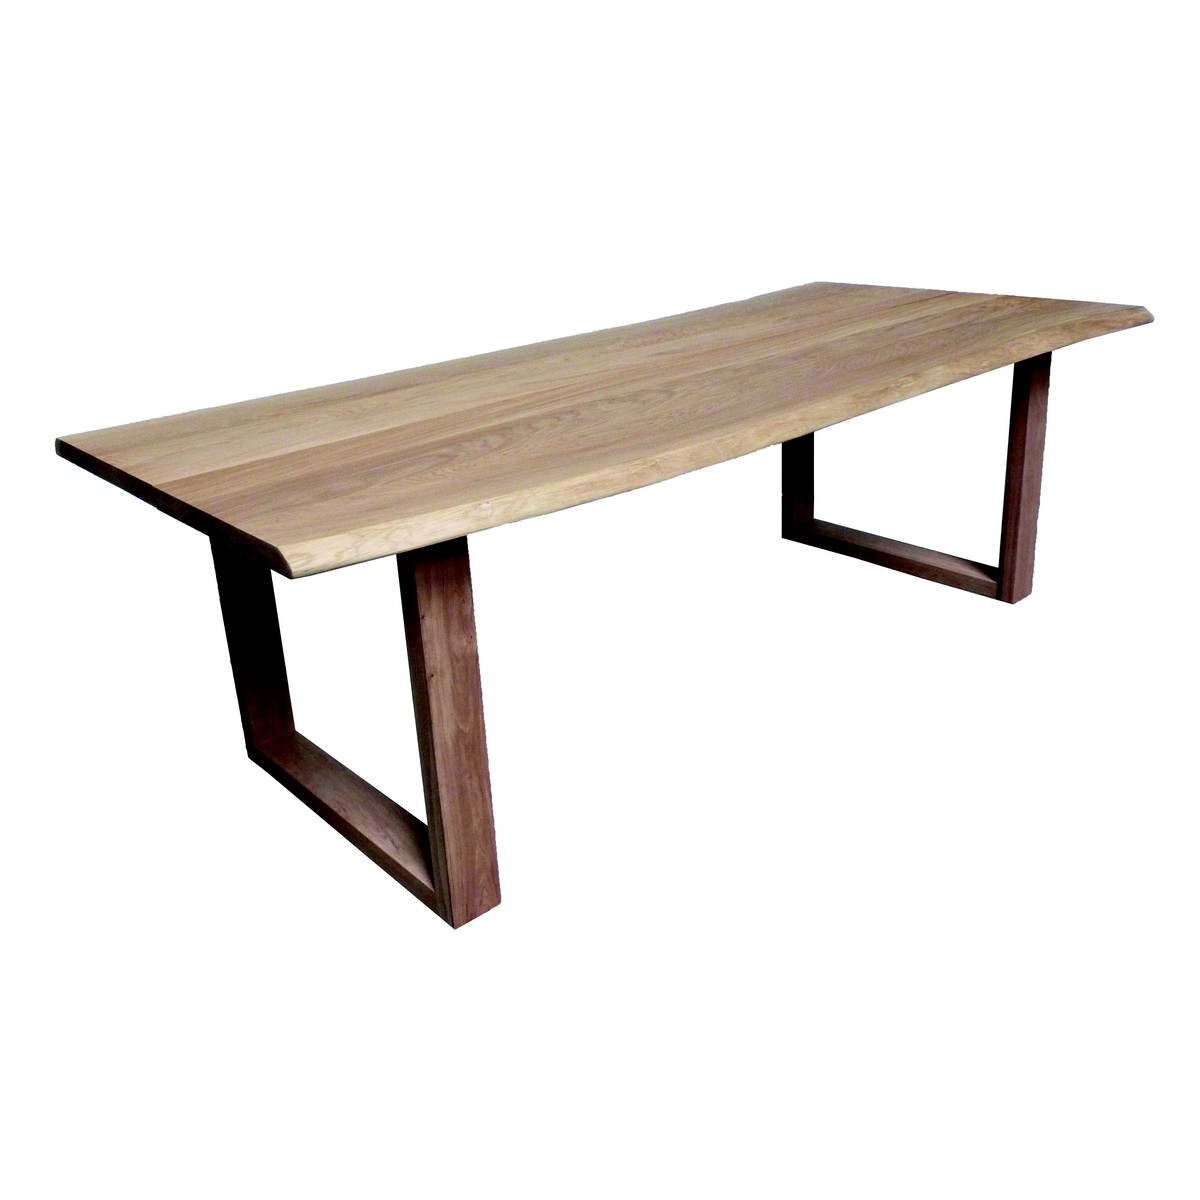   Table Kent Trunk ouverte rectangulaire  160x100x77cm